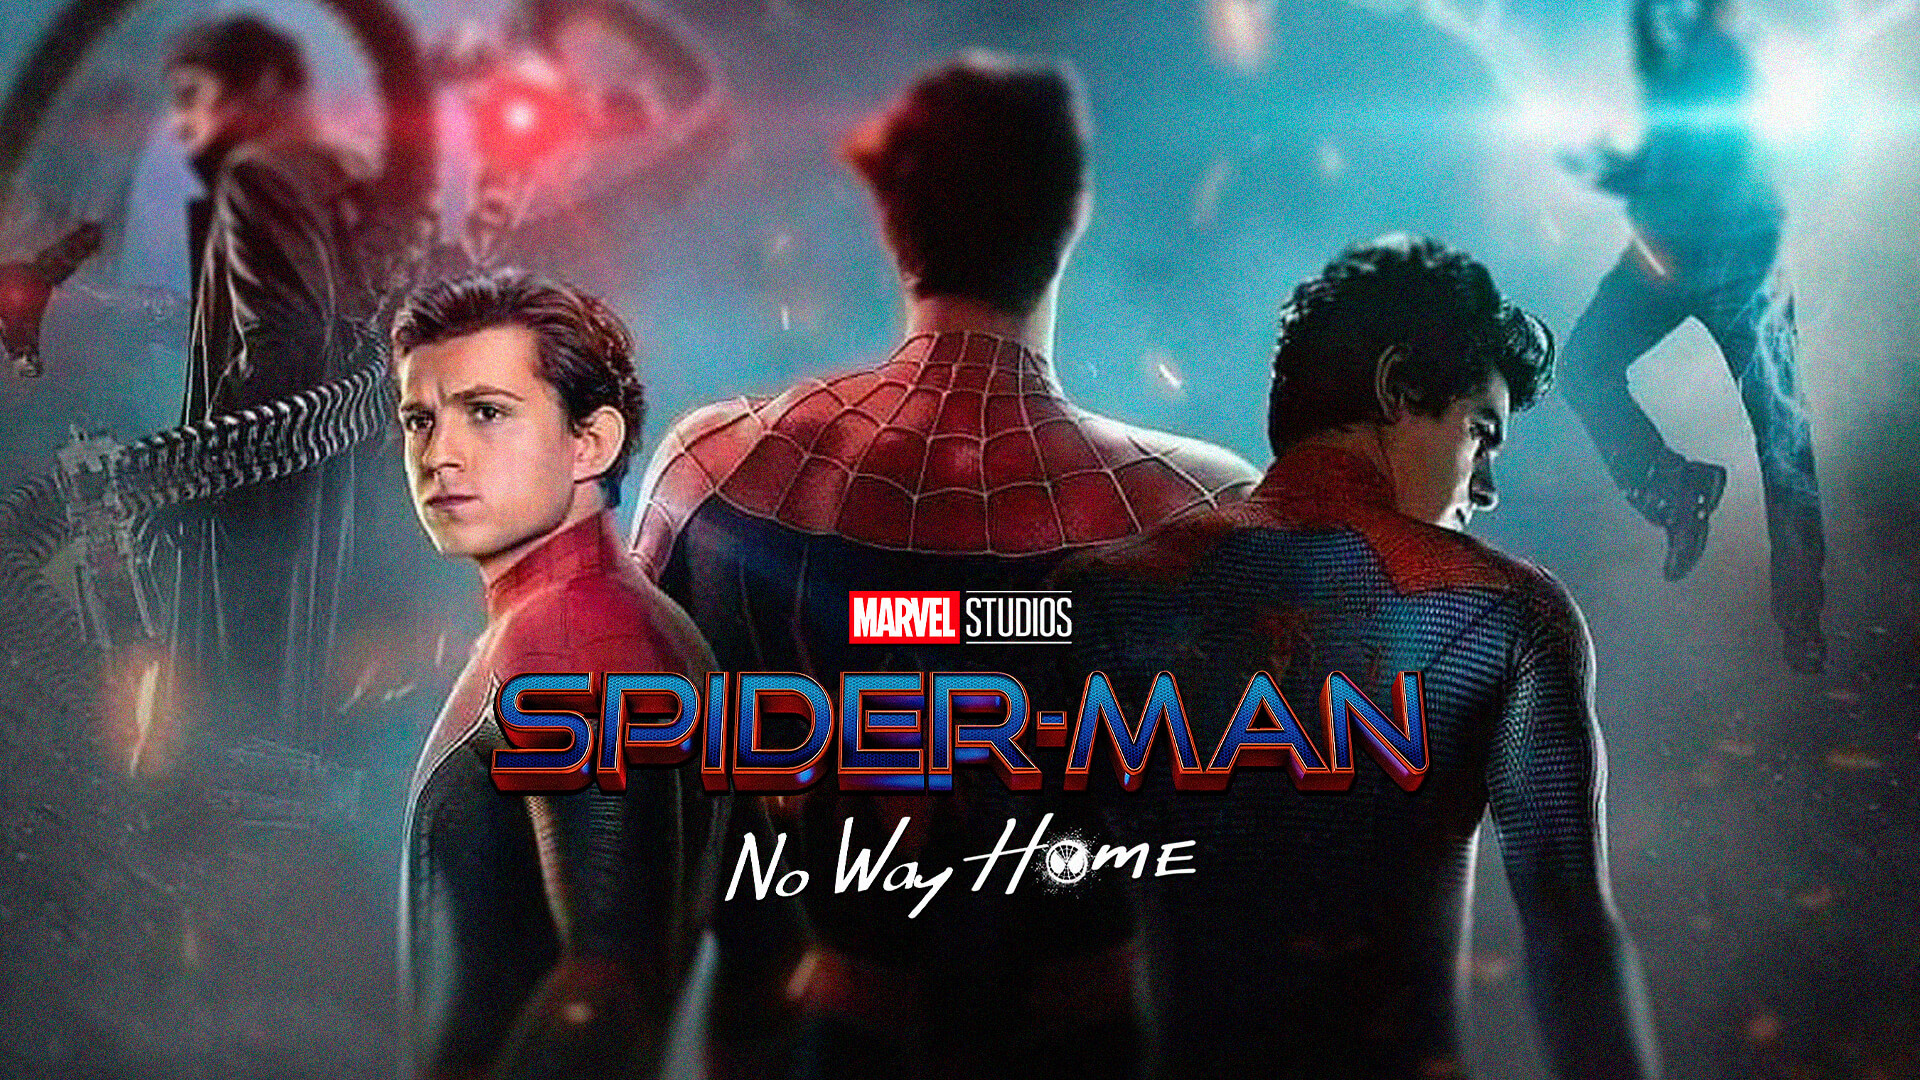 Homem Aranha - Sem volta para casa